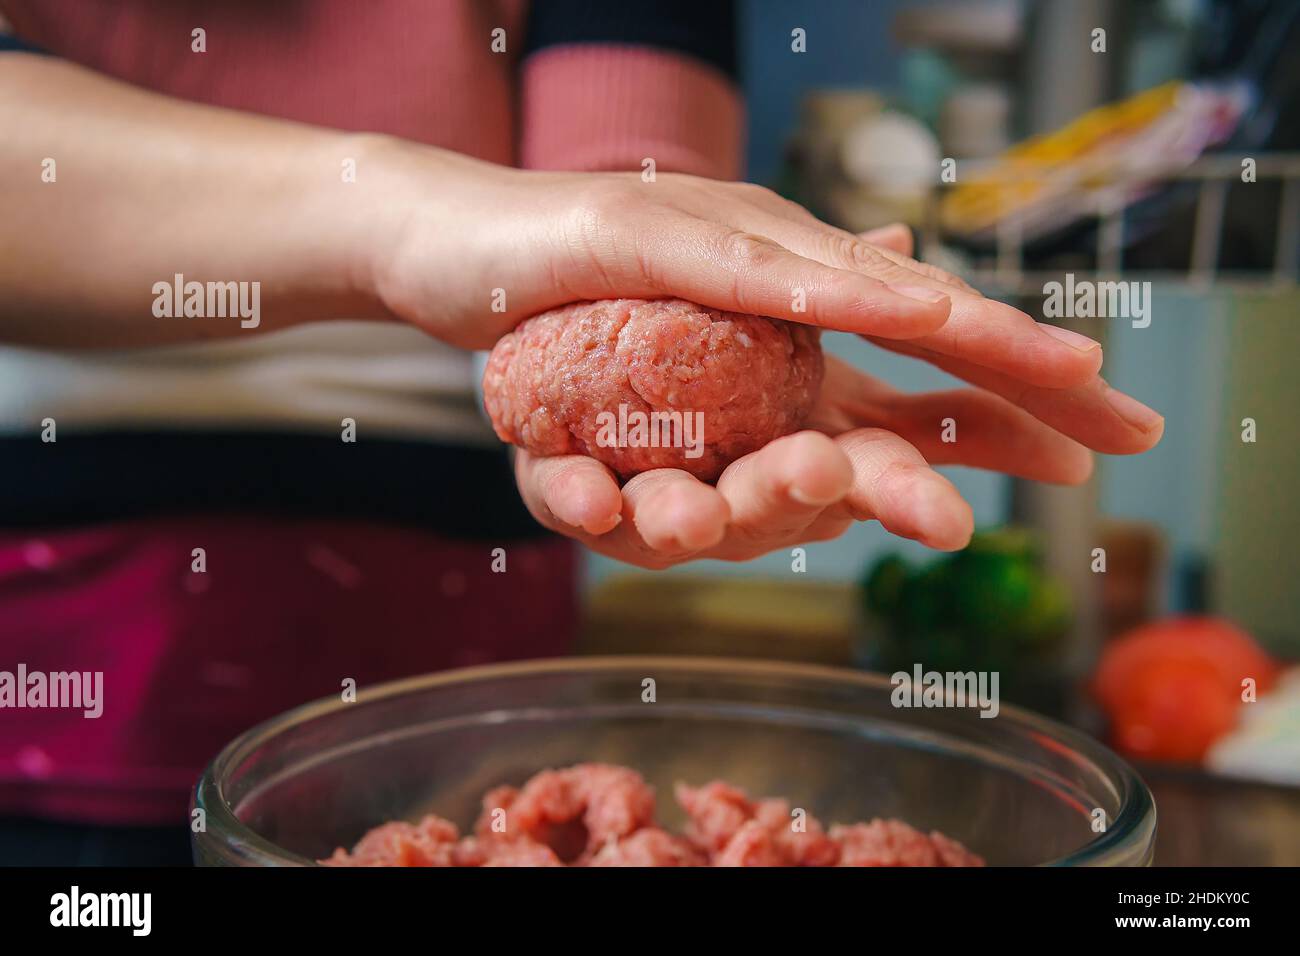 Primer plano de las manos de una mujer preparando carne molida para hacer hamburguesas, la carne sigue cruda y está añadiendo los ingredientes, agradable atmósfera en el Foto de stock